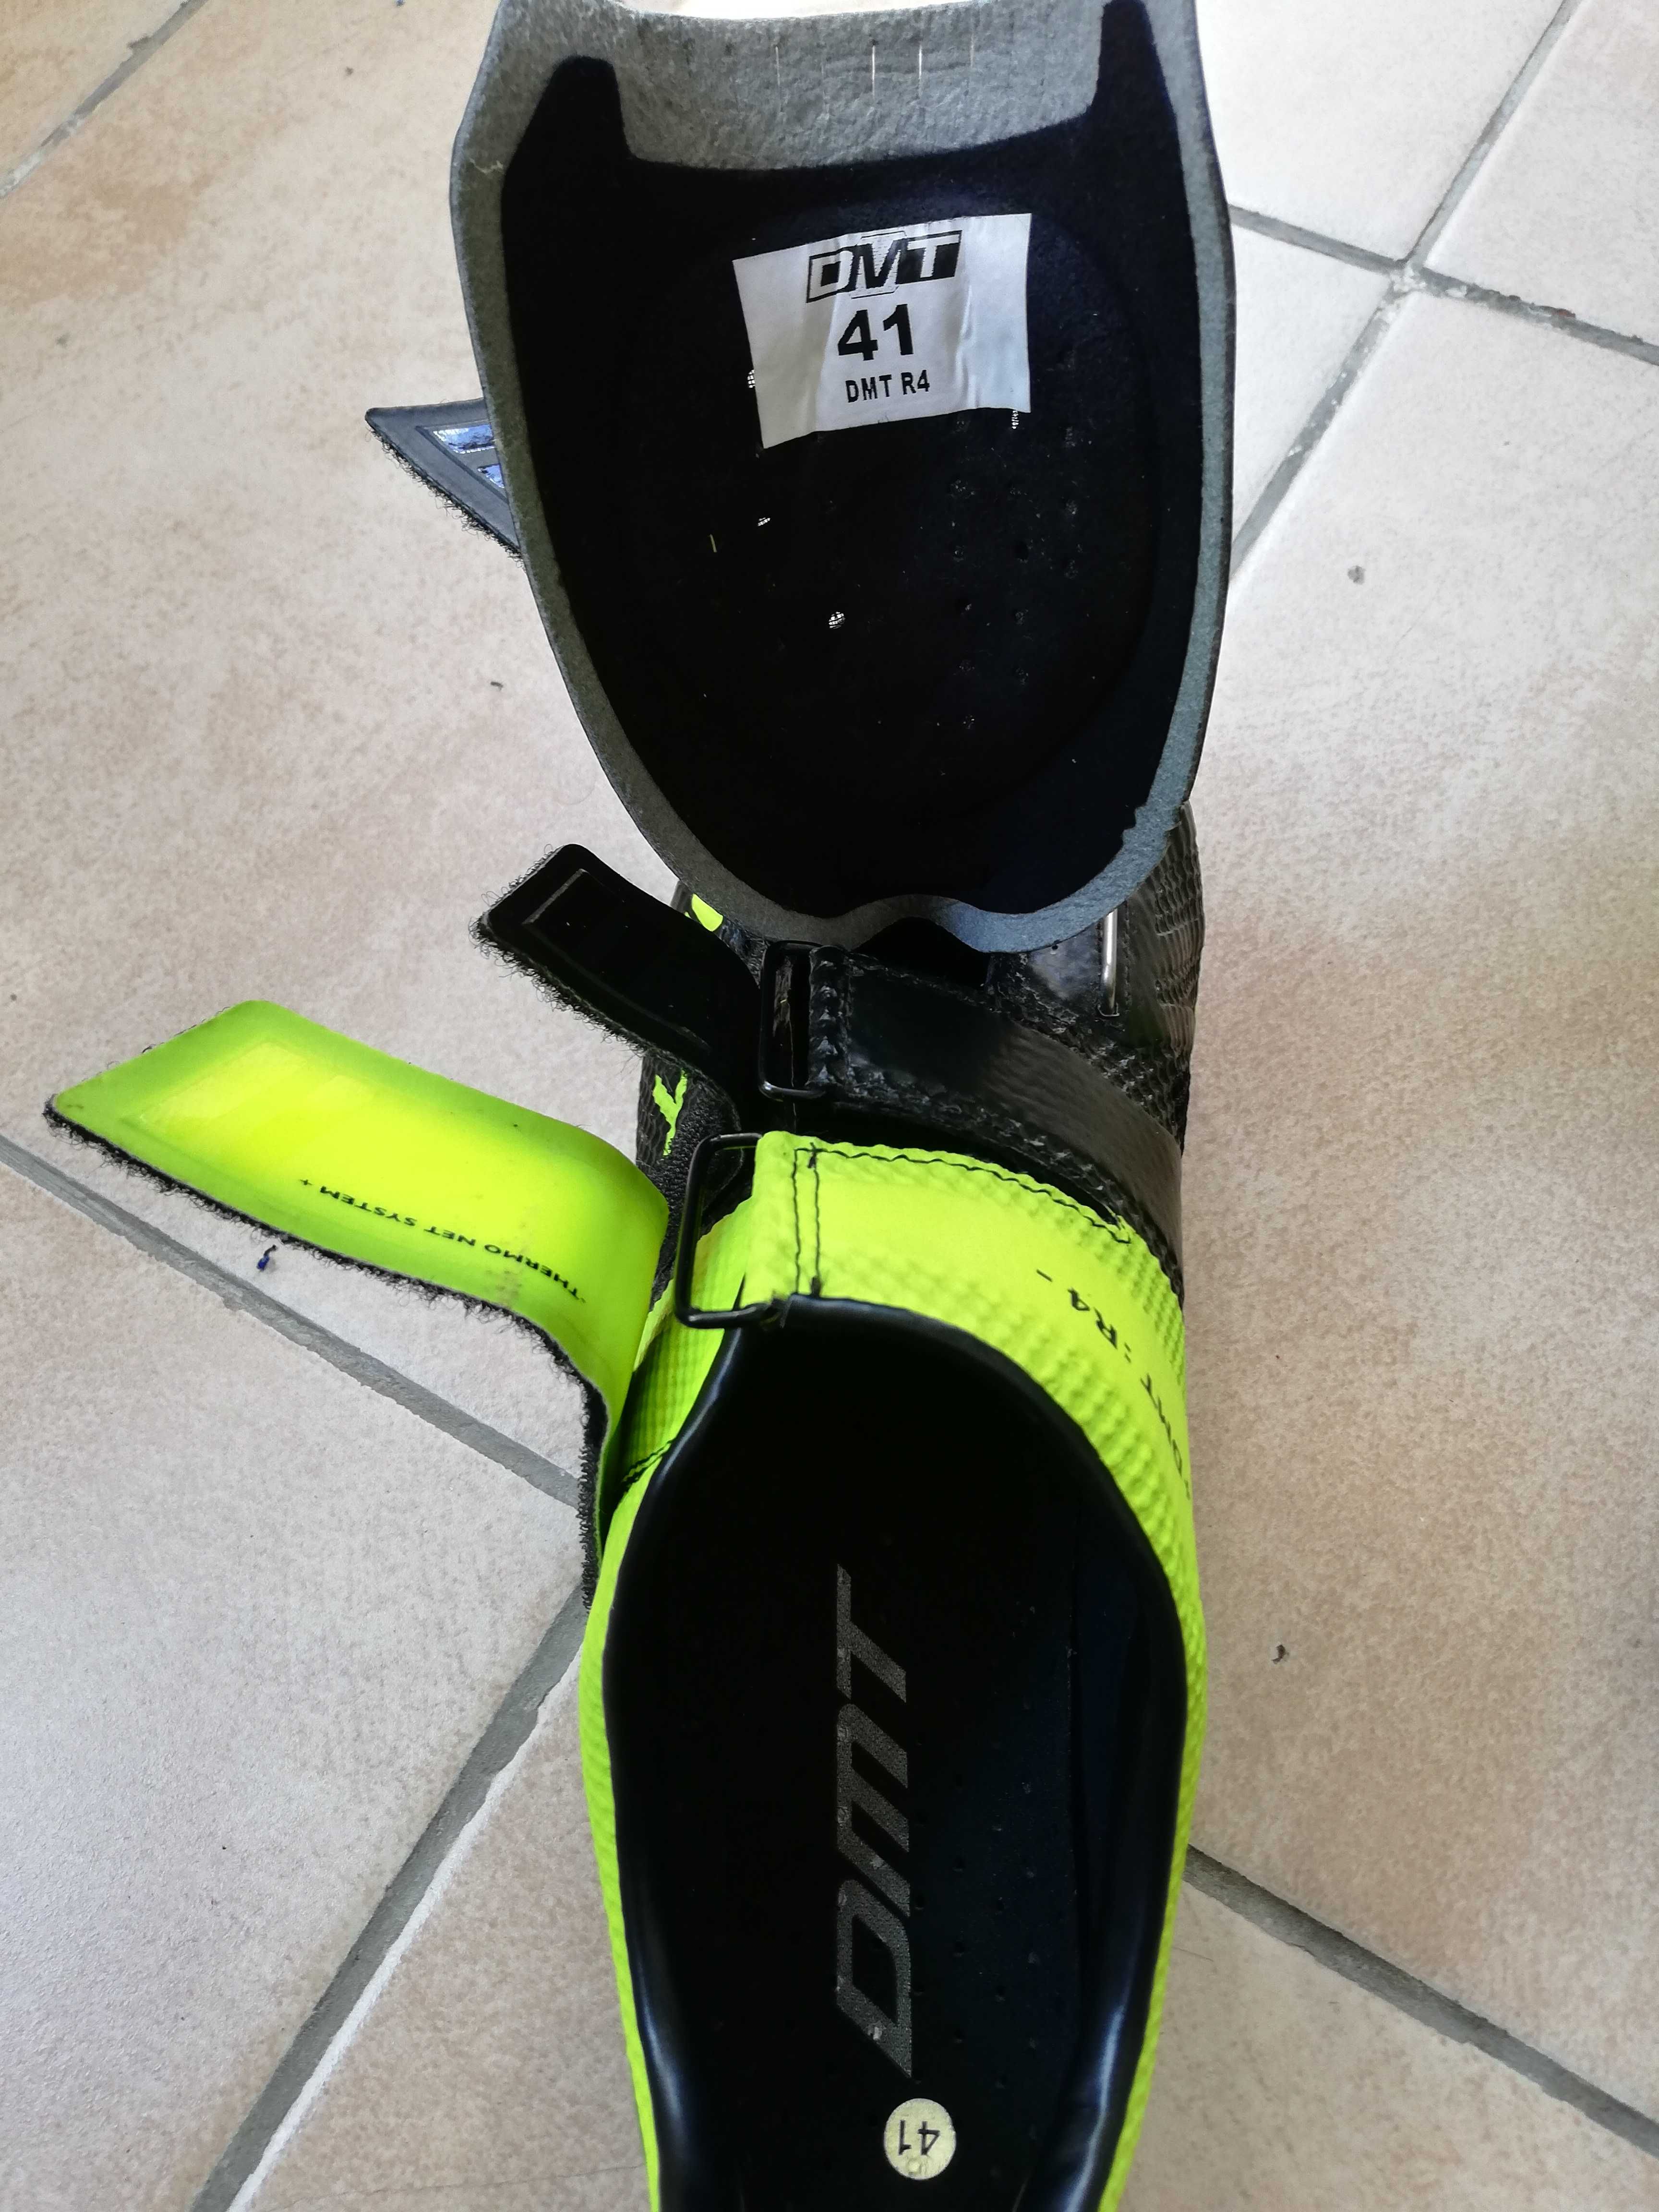 Pantofi ciclism DMT R4 mărime 41